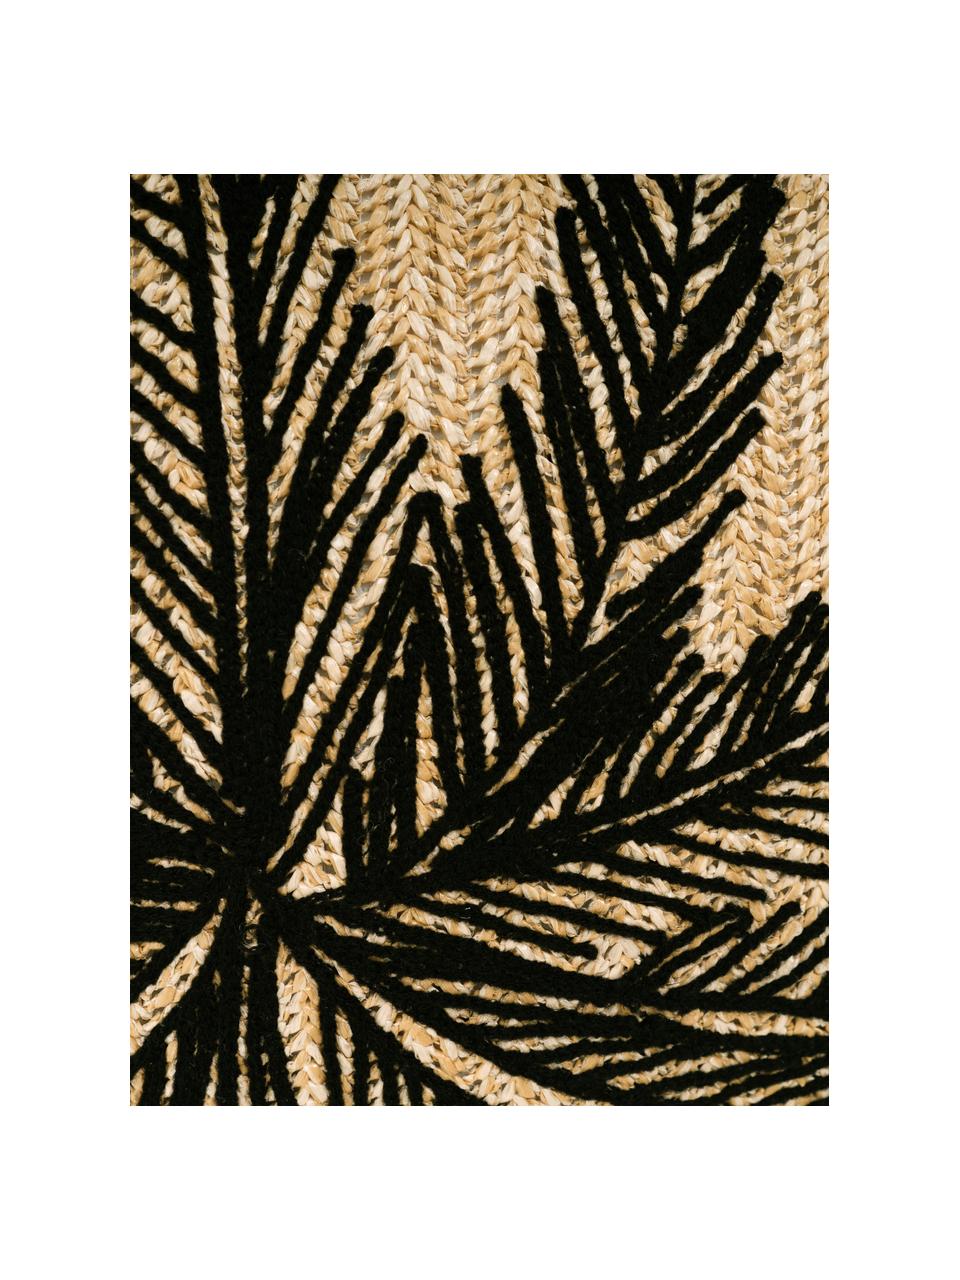 Outdoor-Kissen Knitted mit Palmenmotiv, mit Inlett, Bezug: 85% Polypropylen, 15% Nyl, Beige, Schwarz, 43 x 43 cm